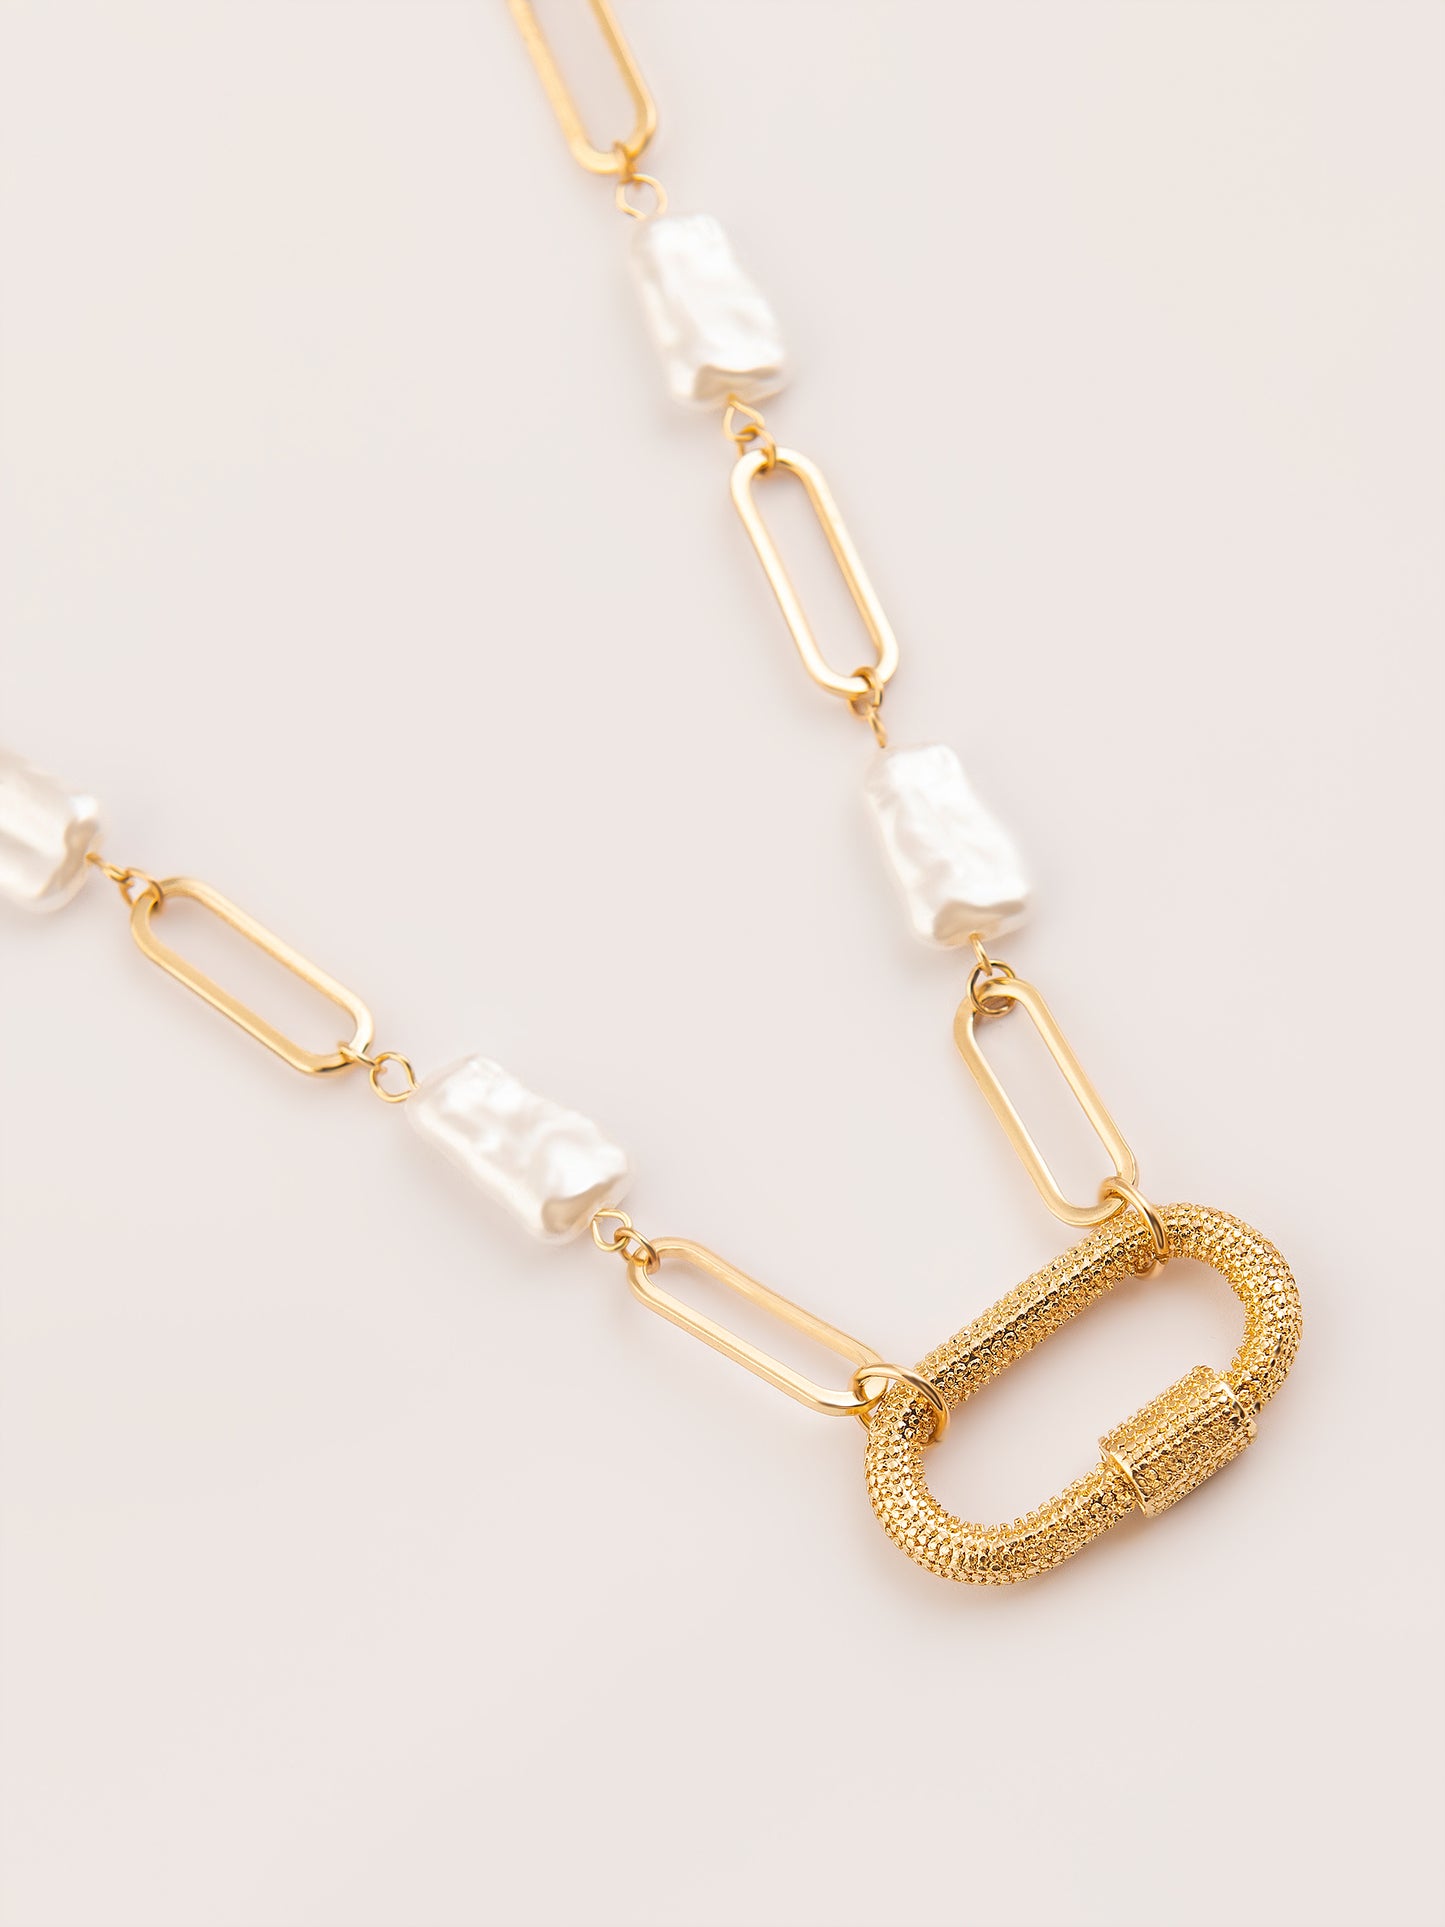 Embellished Loop Necklace